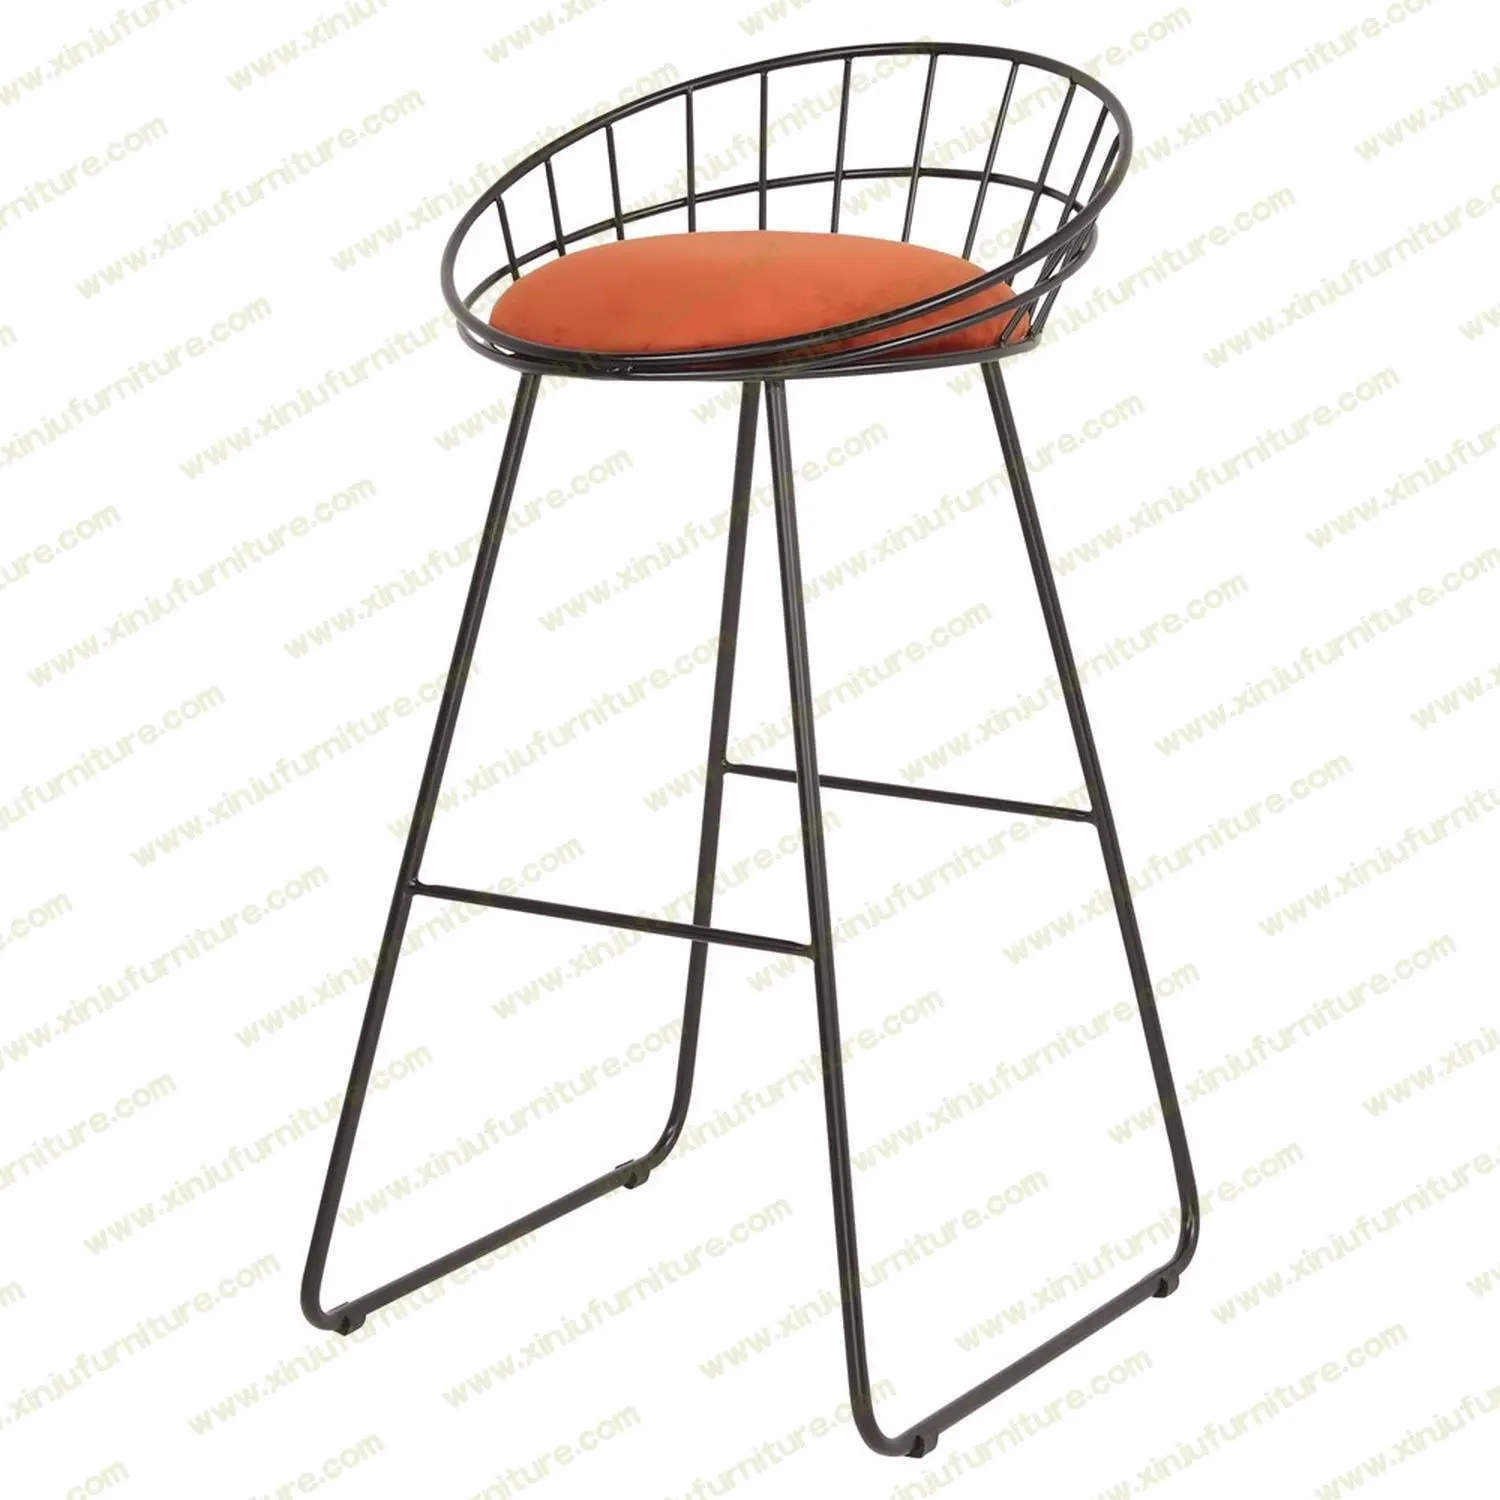 Art design bar chair